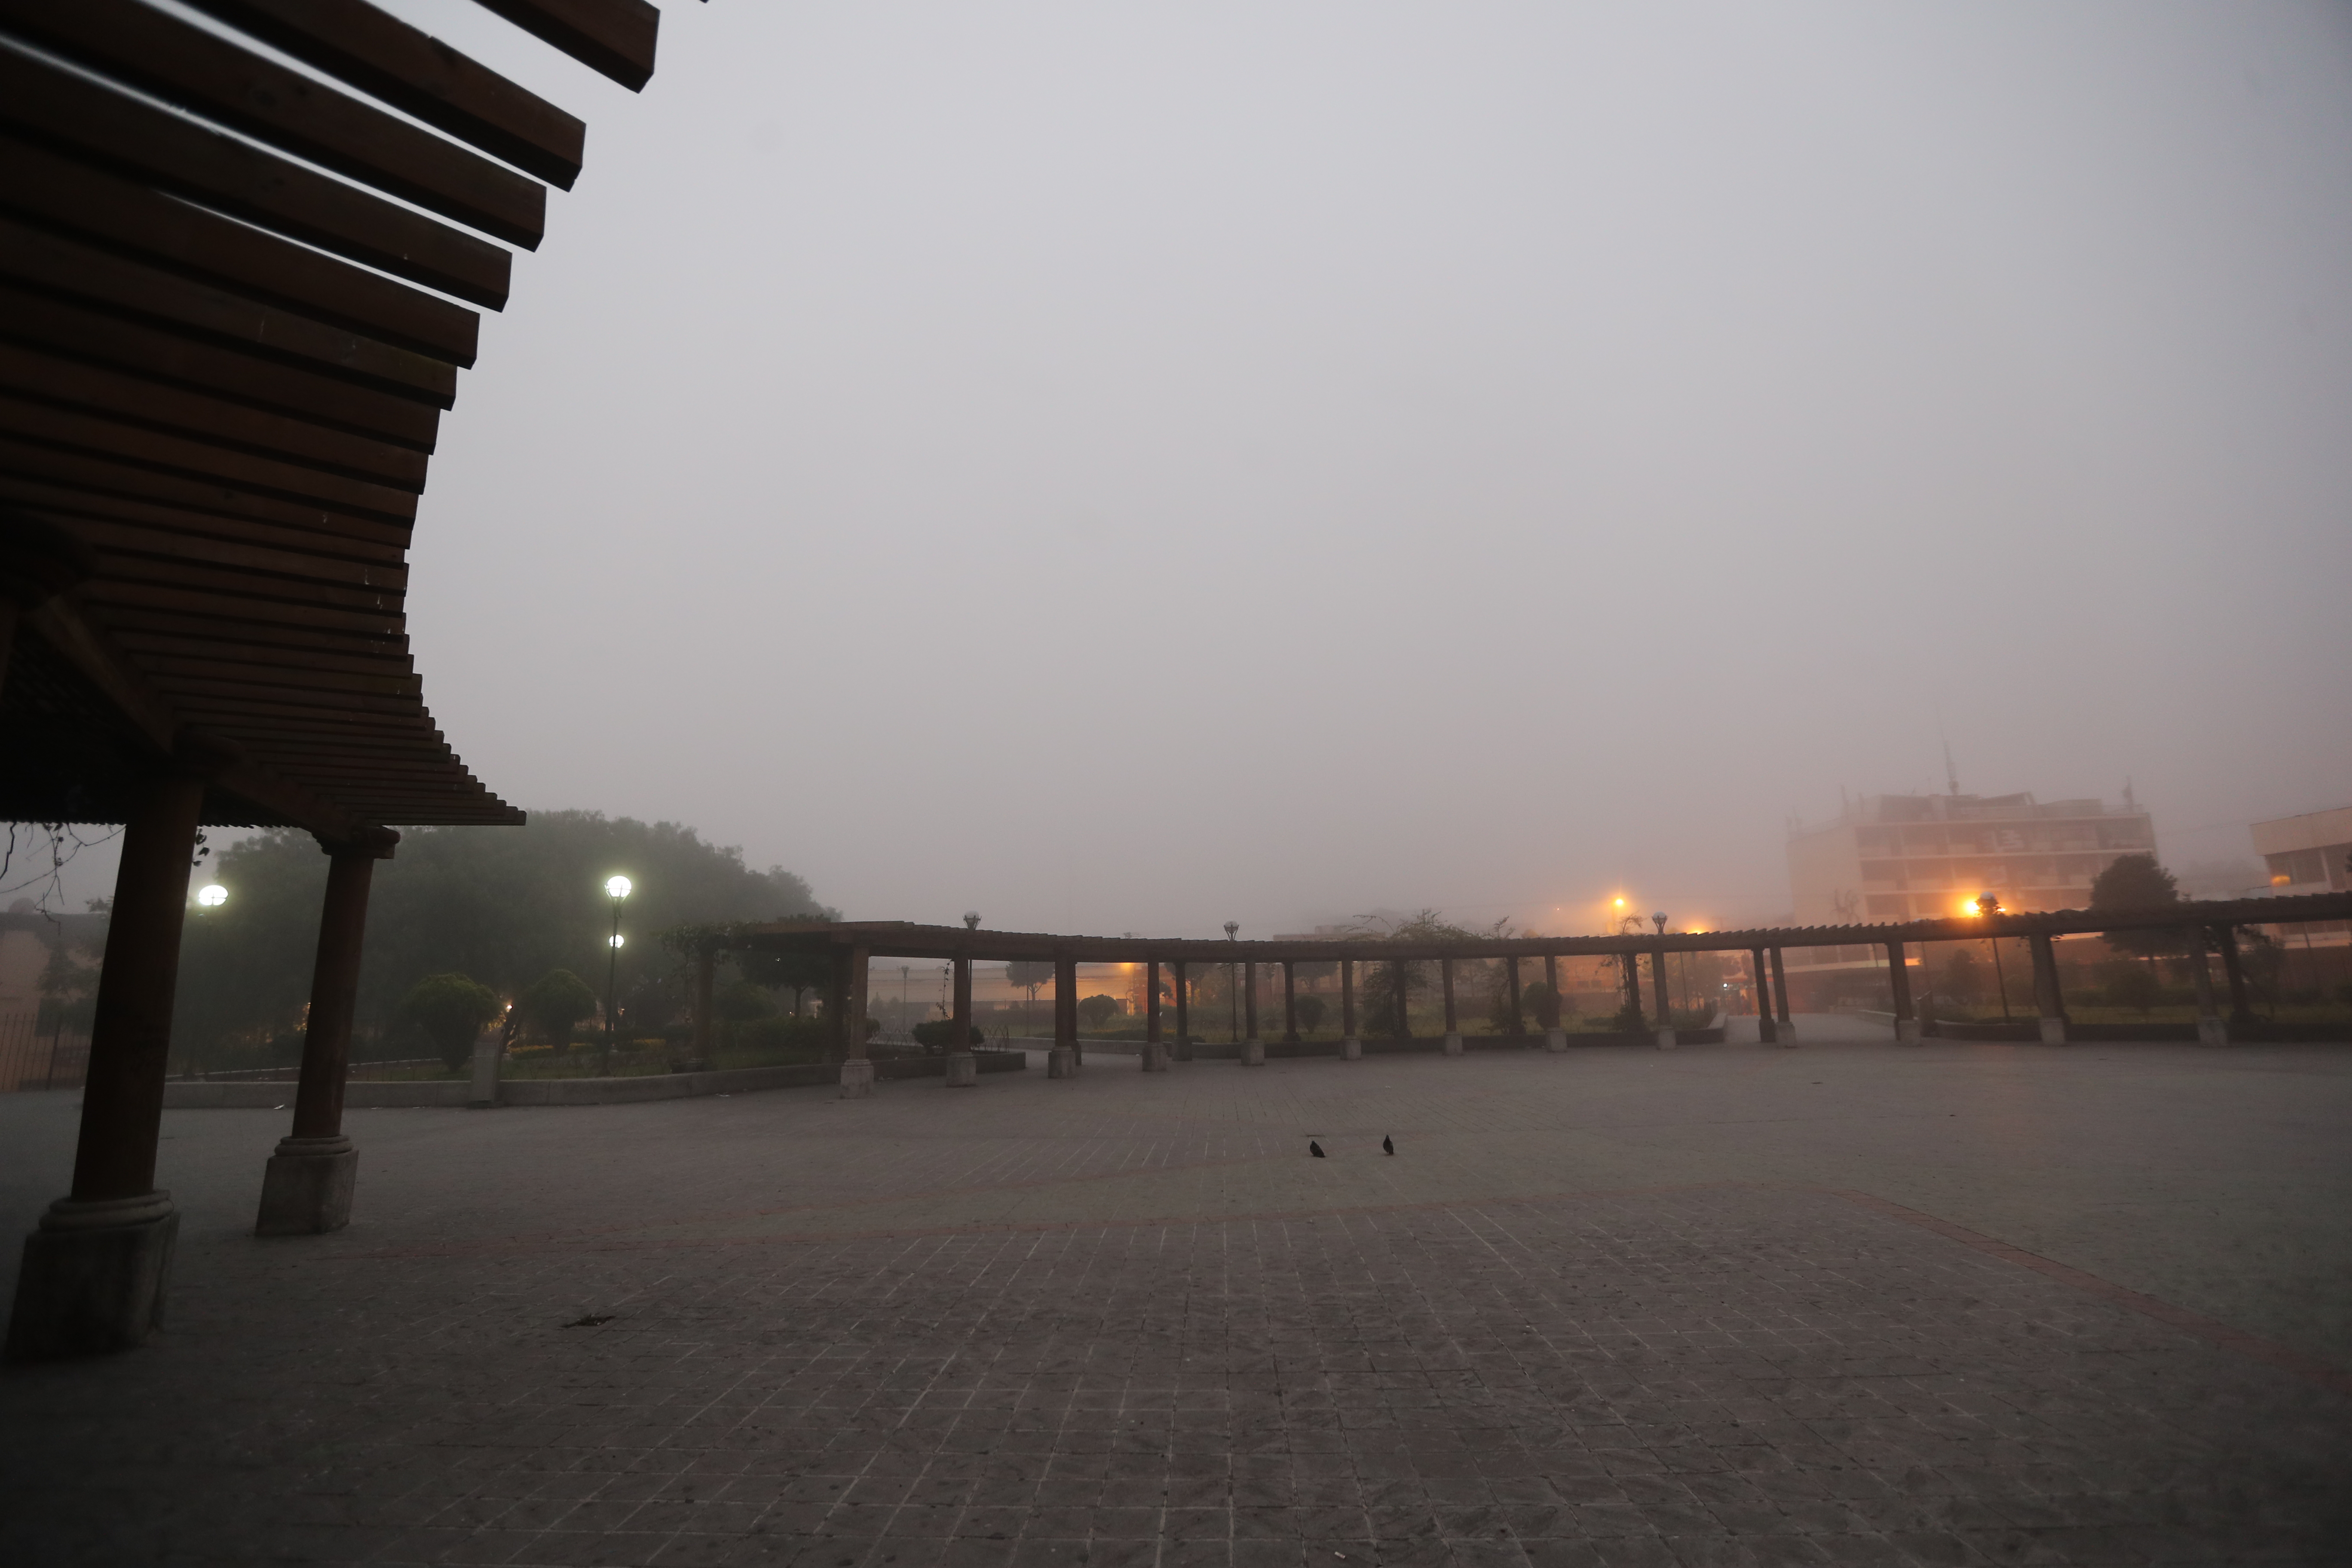 Las bajas temperaturas al amanecer producirán niebla, aunque se espera que las condiciones sean cálidas en el transcurso del día. (Foto Prensa Libre: Erick Ávila)